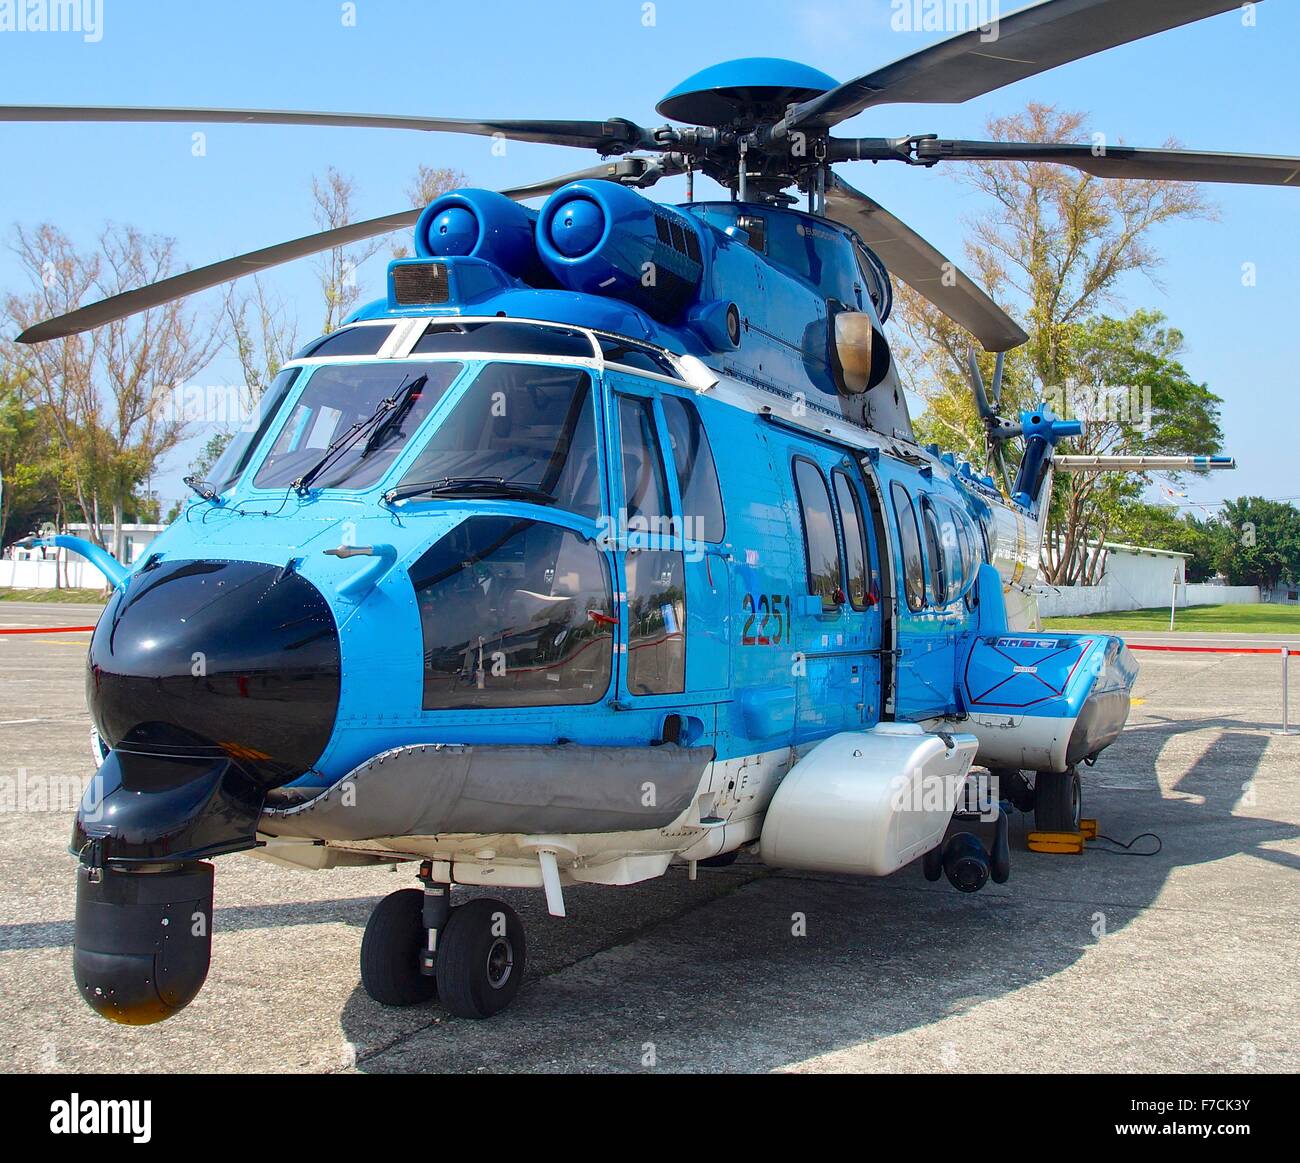 Hélicoptère EC-225 pour l'ouverture à la visite au quartier général de la Marine de Kaohsiung à Taiwan. Le Oct 24, 2015 Banque D'Images